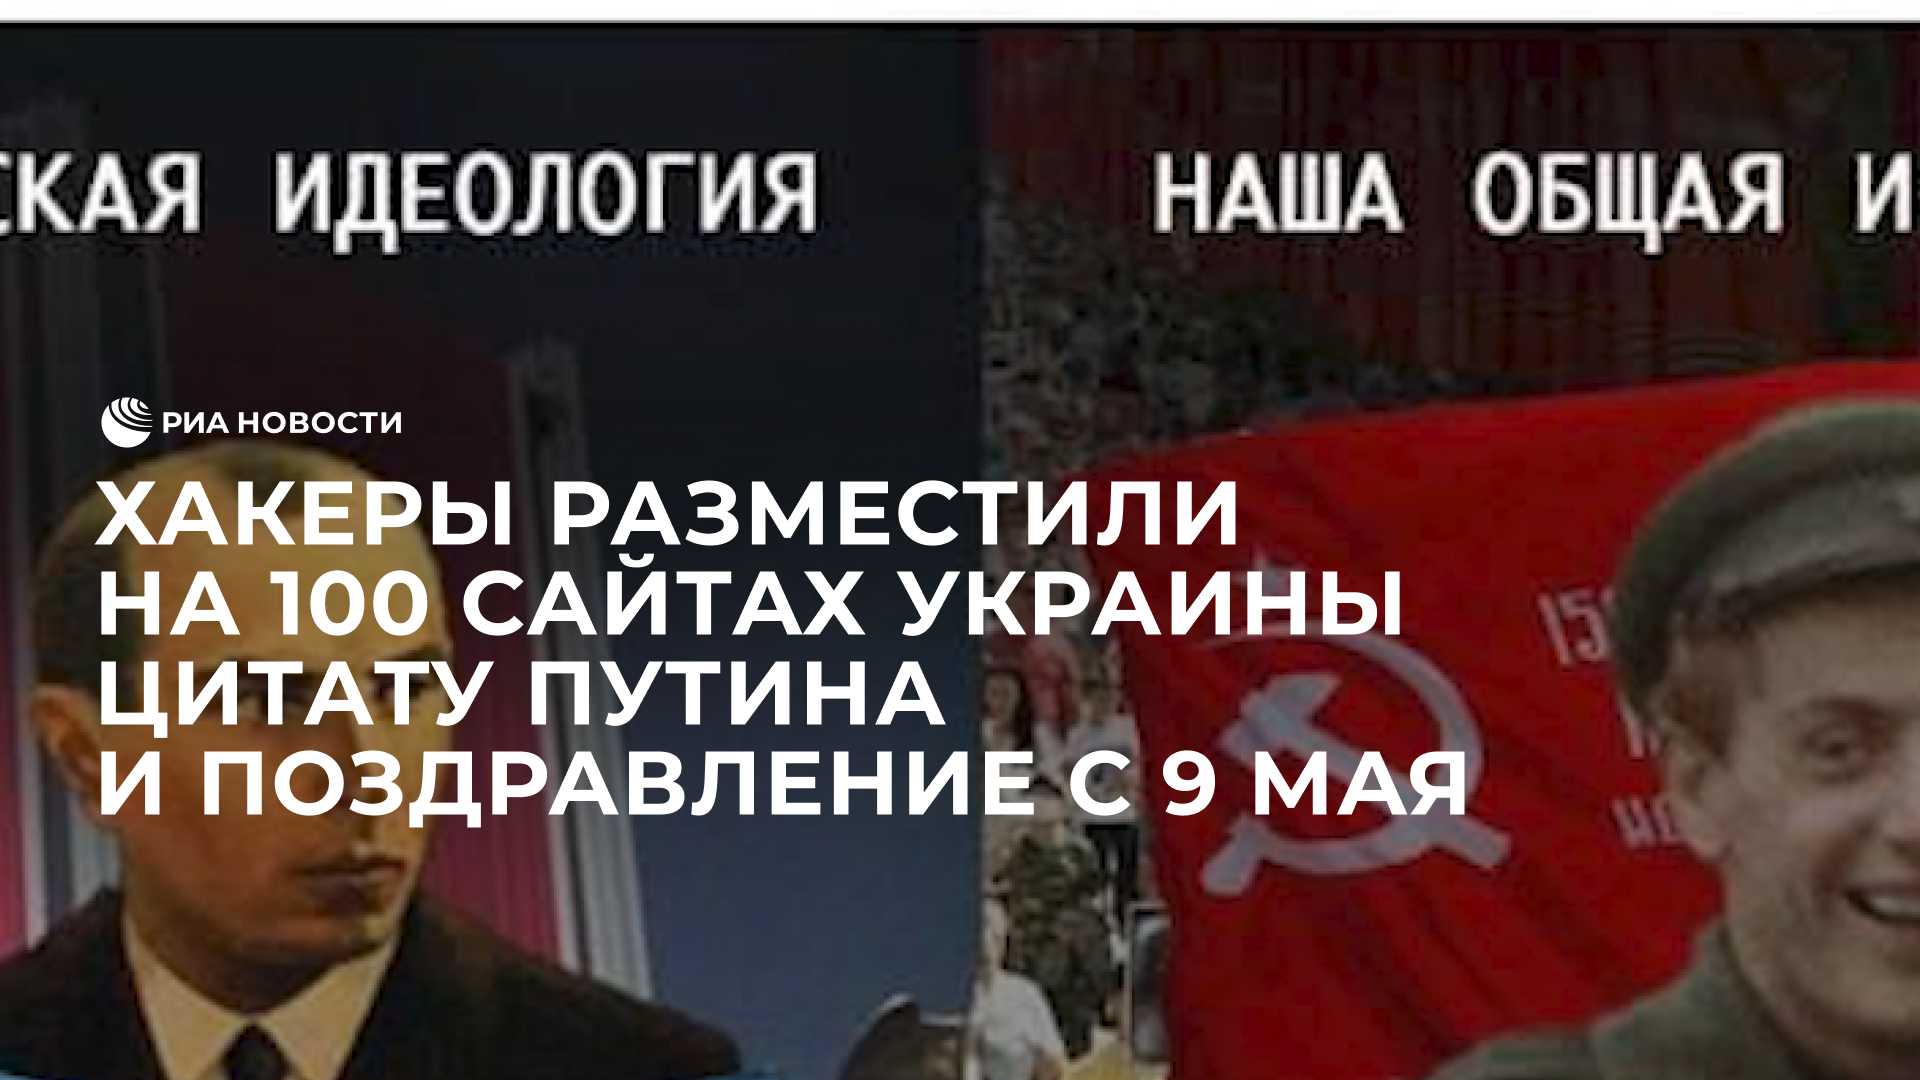 Хакеры разместили на 100 сайтах Украины цитату Путина и поздравление с 9 мая